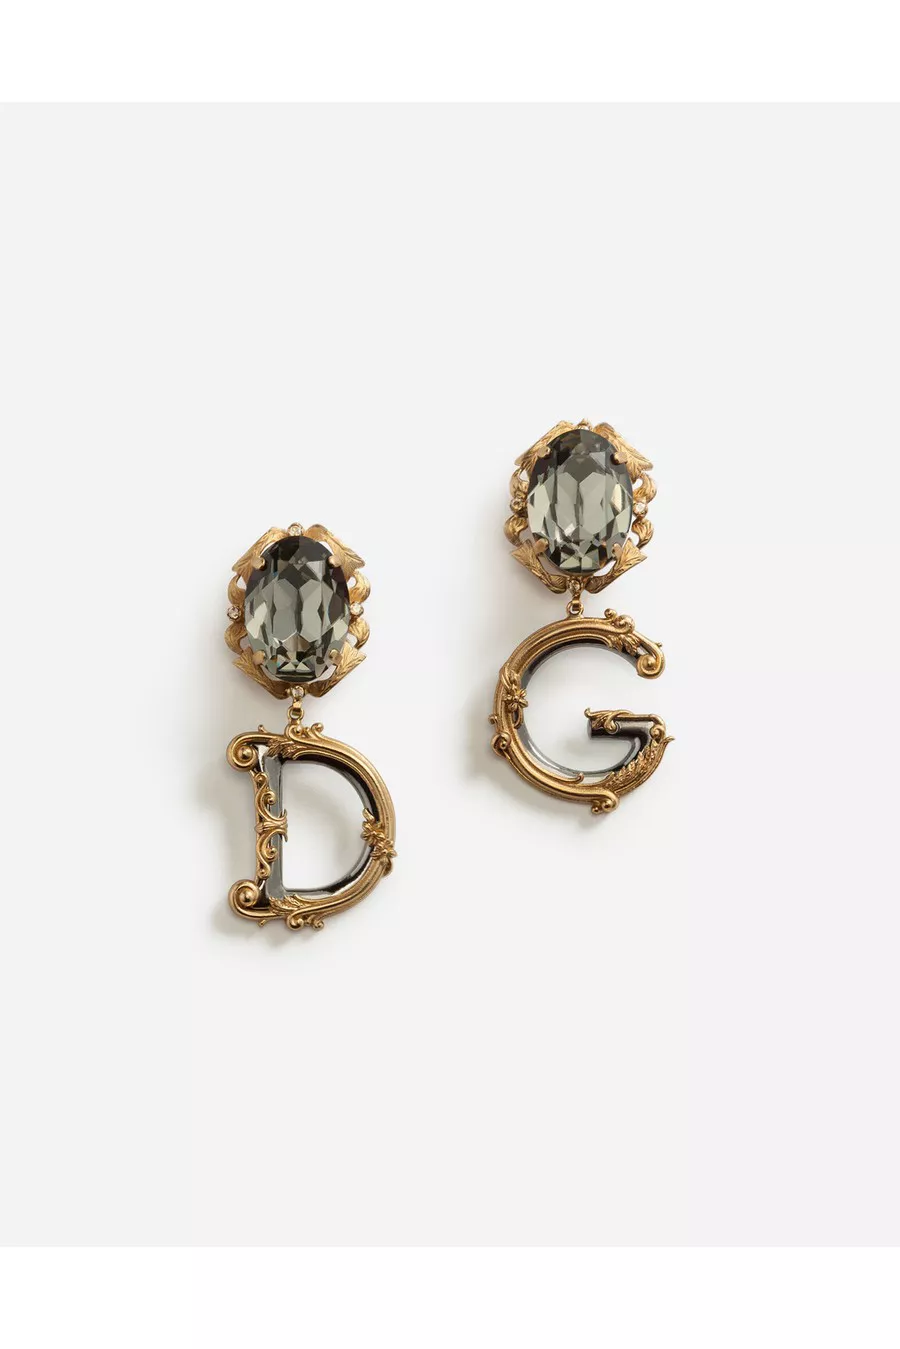 Dolce & Gabbana earrings